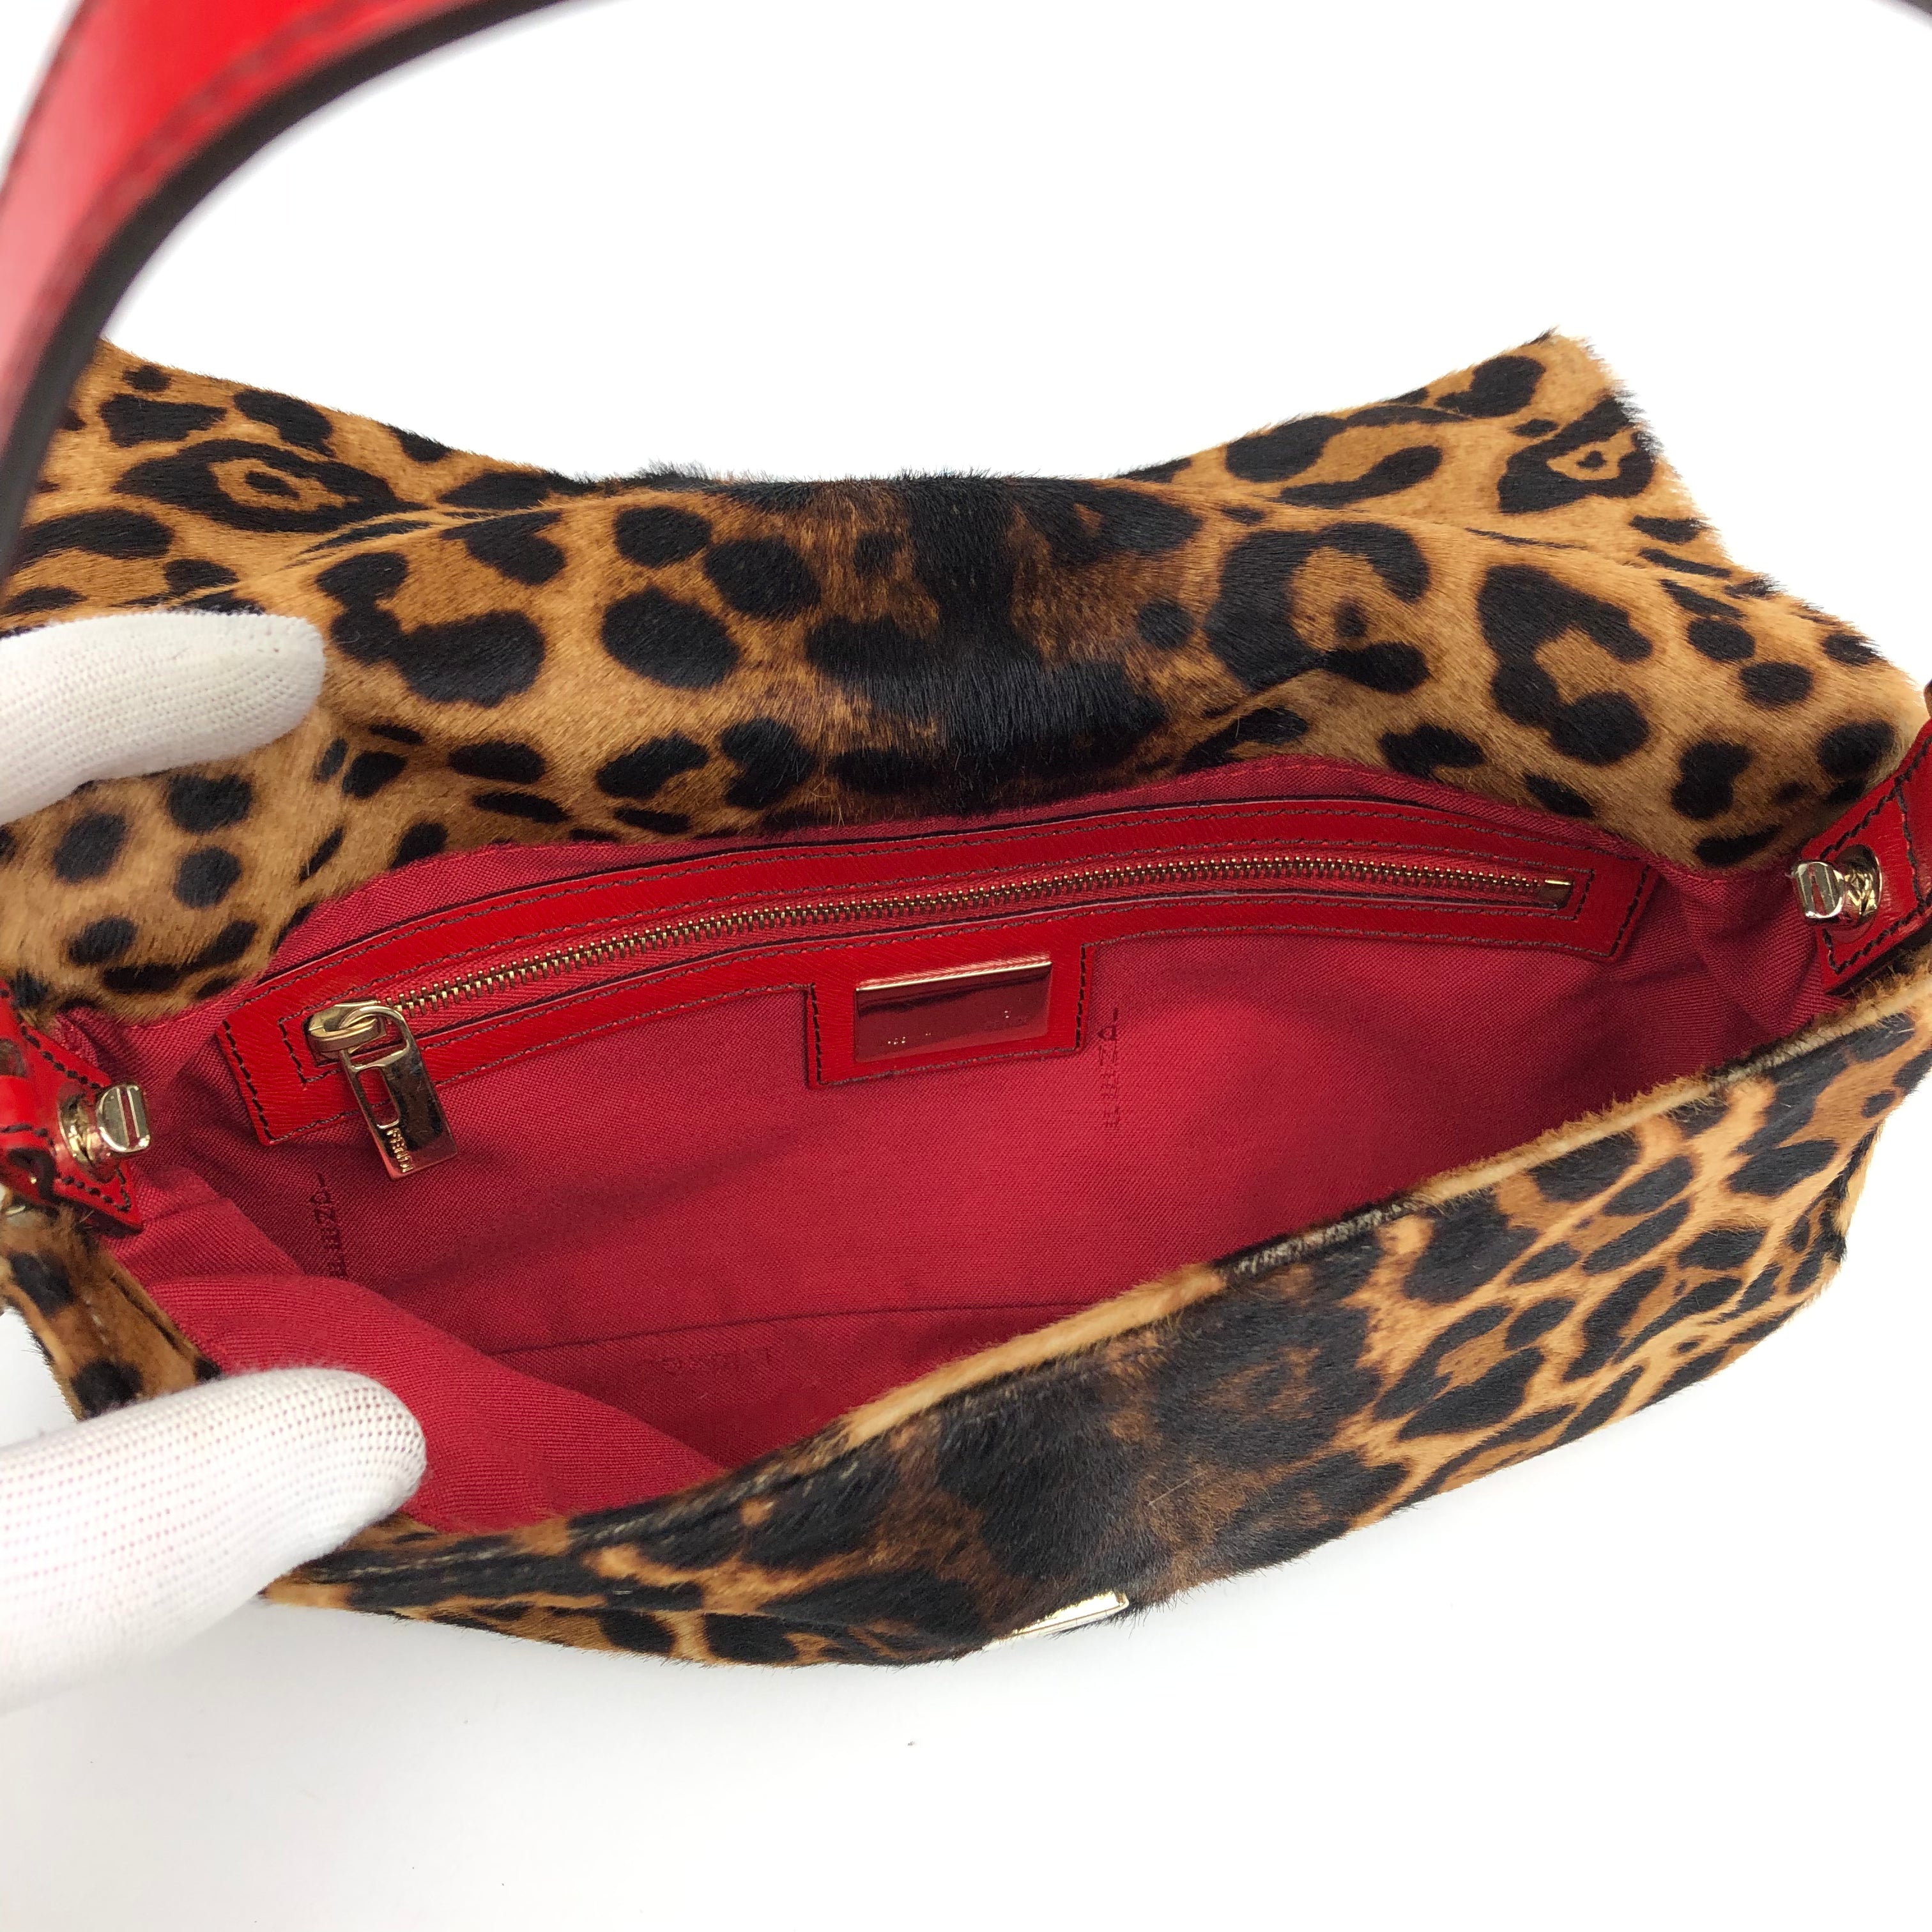 Fendi Leopard Pony Hair Baguette Shoulder Bag